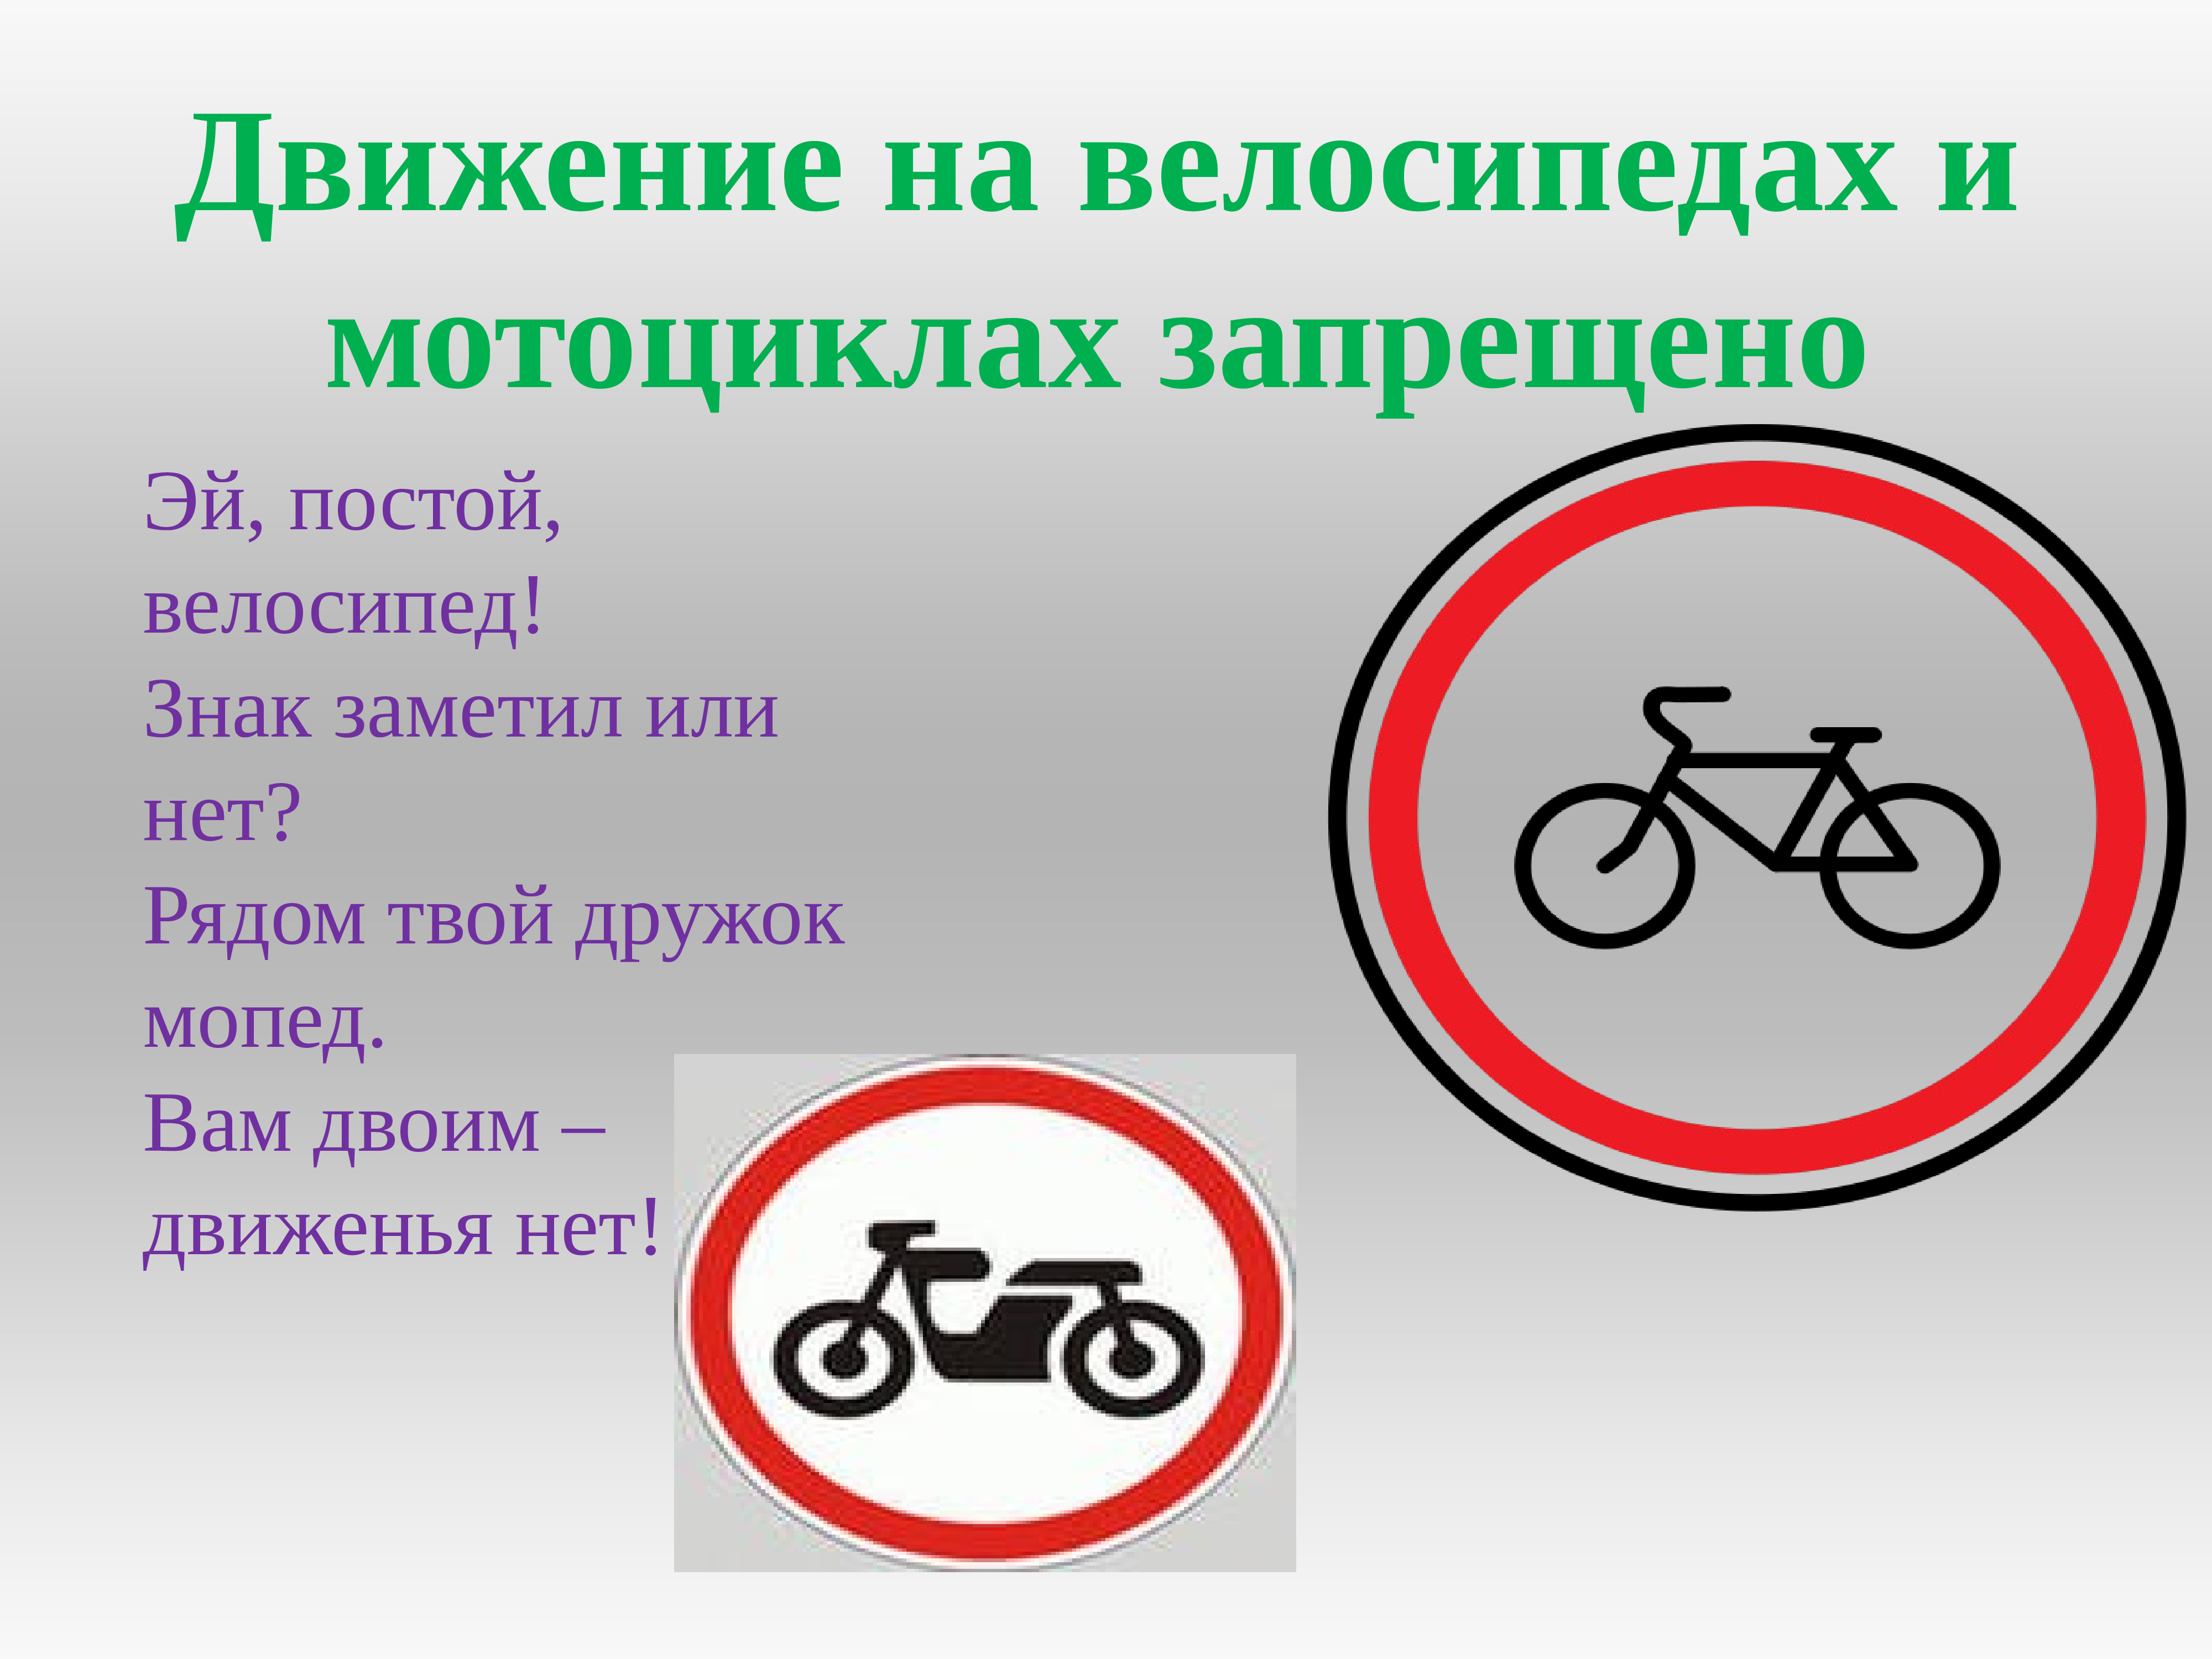 Что значит постойте. Знак запрет на движение велосипедов и мопедов. Движение на велосипедах запрещено. Движение на велосипедах и мопедах. Движение на велосипедах и мопедах запрещено.